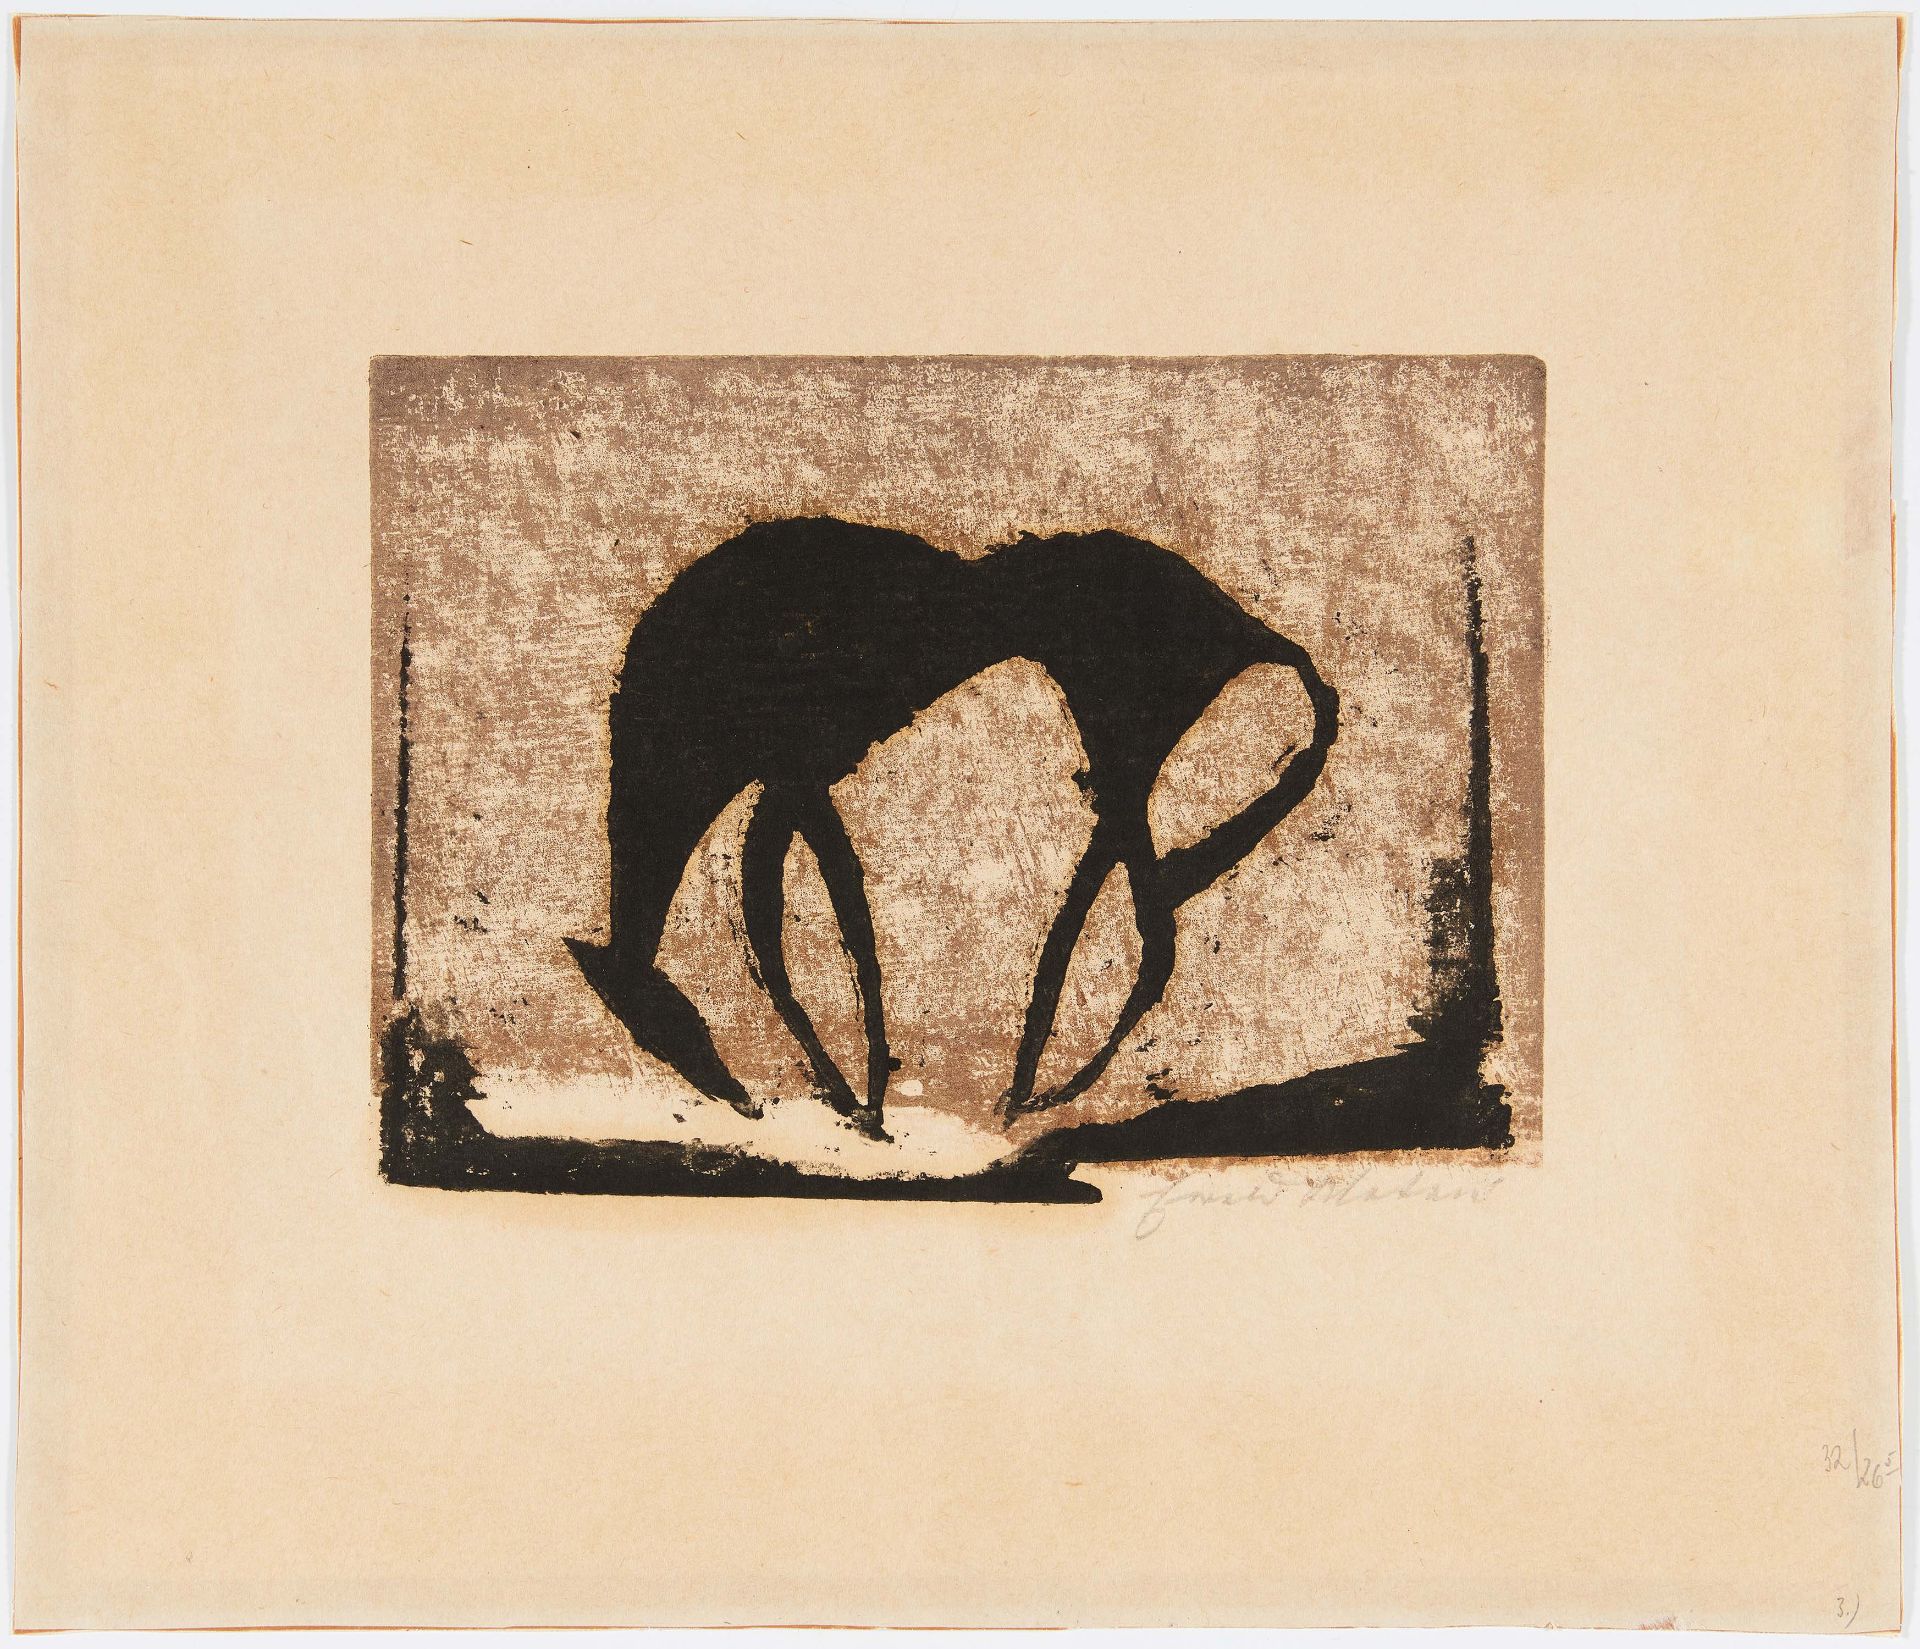 MATARÉ, EWALD1887 Aachen - 1965 BüderichTitel: Fressendes Pferd. Technik: Holzschnitt auf Papier. - Bild 2 aus 3